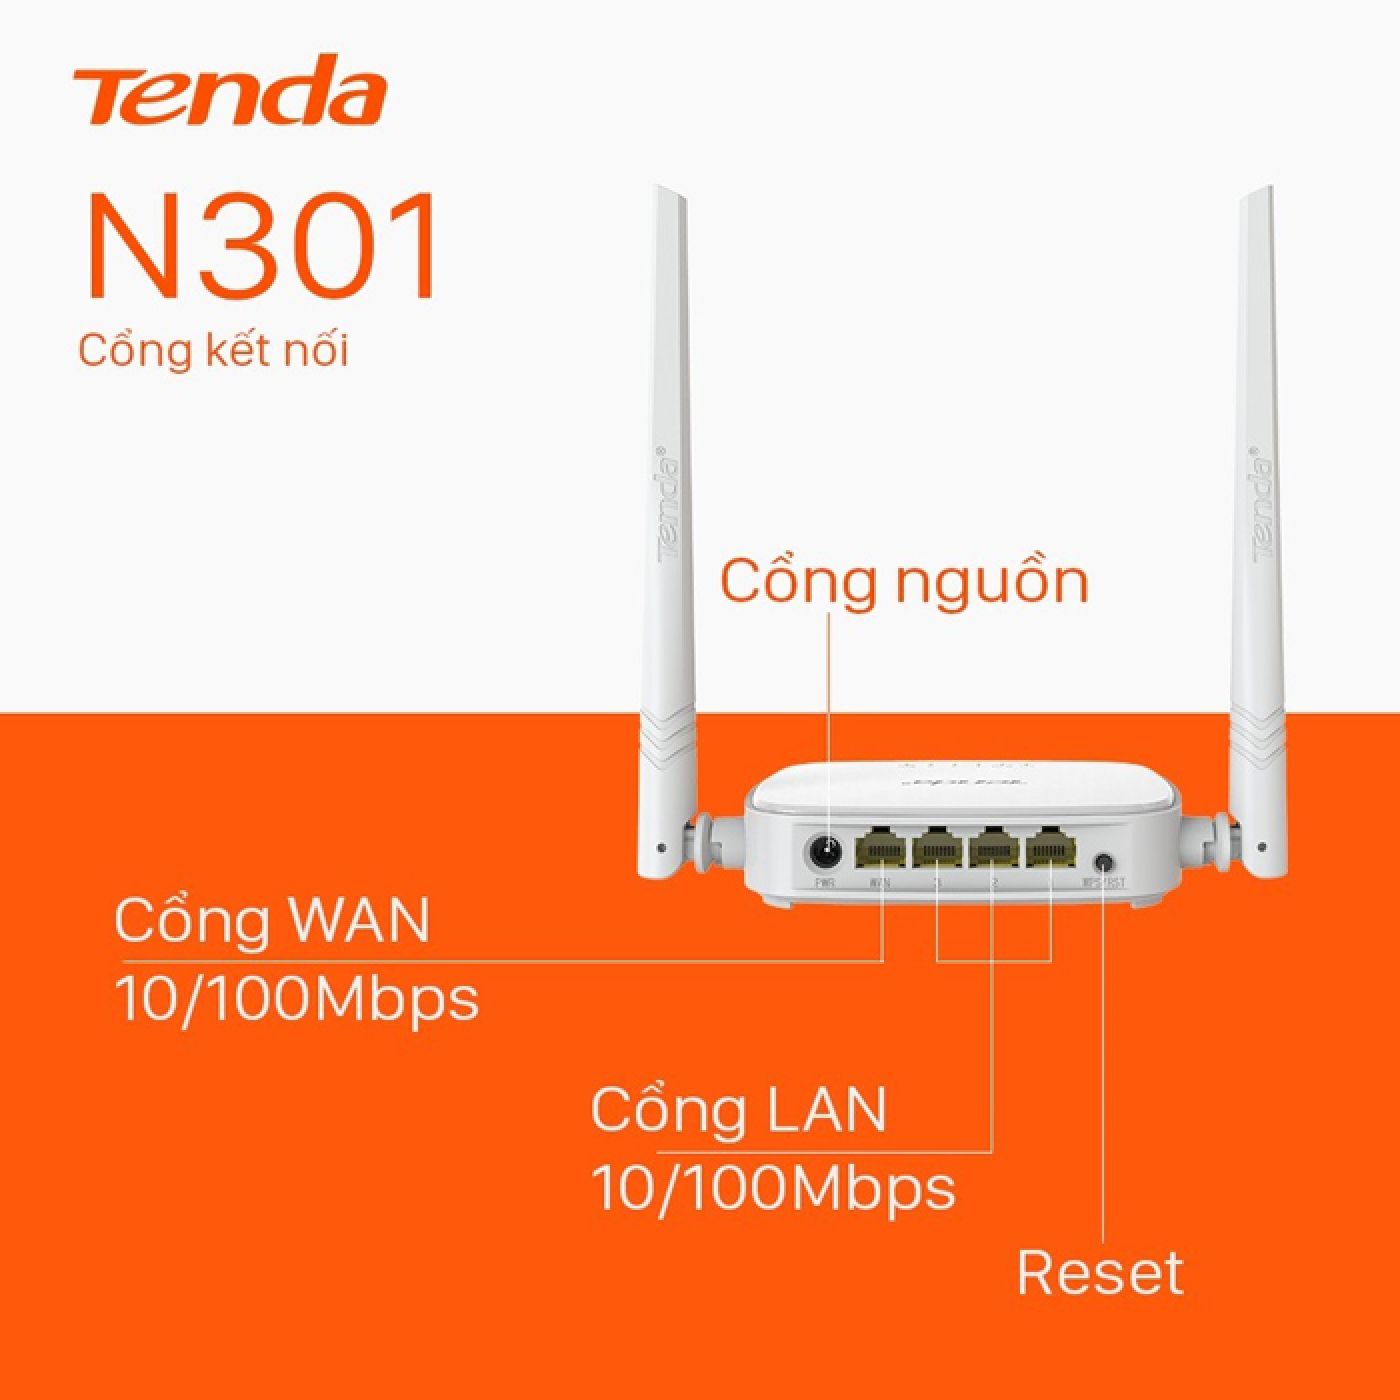 Bộ Phát WiFi Tenda N301 Chuẩn N 300Mbps - Hàng Chính Hãng